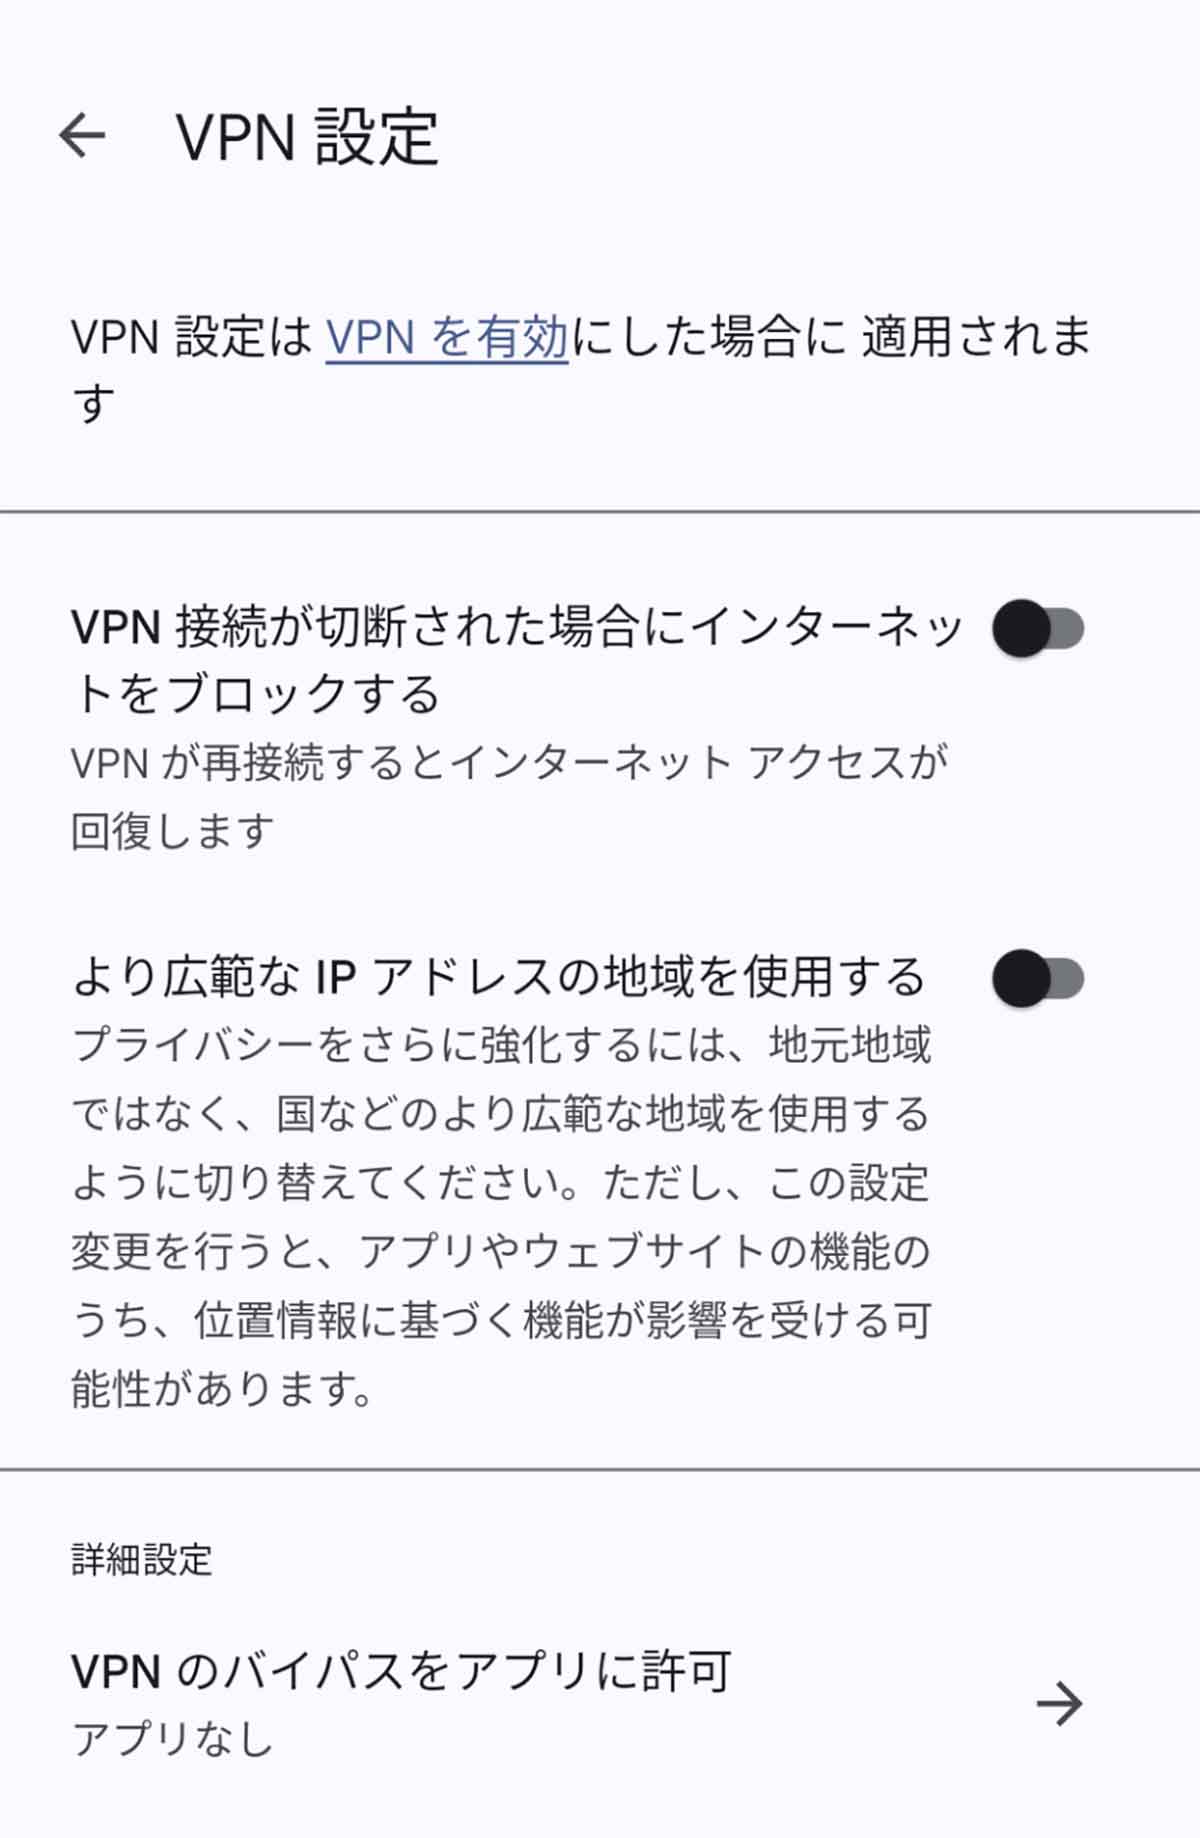 【メリット】VPN機能と最大24時間のビデオ通話が利用可能（2TB以上）1